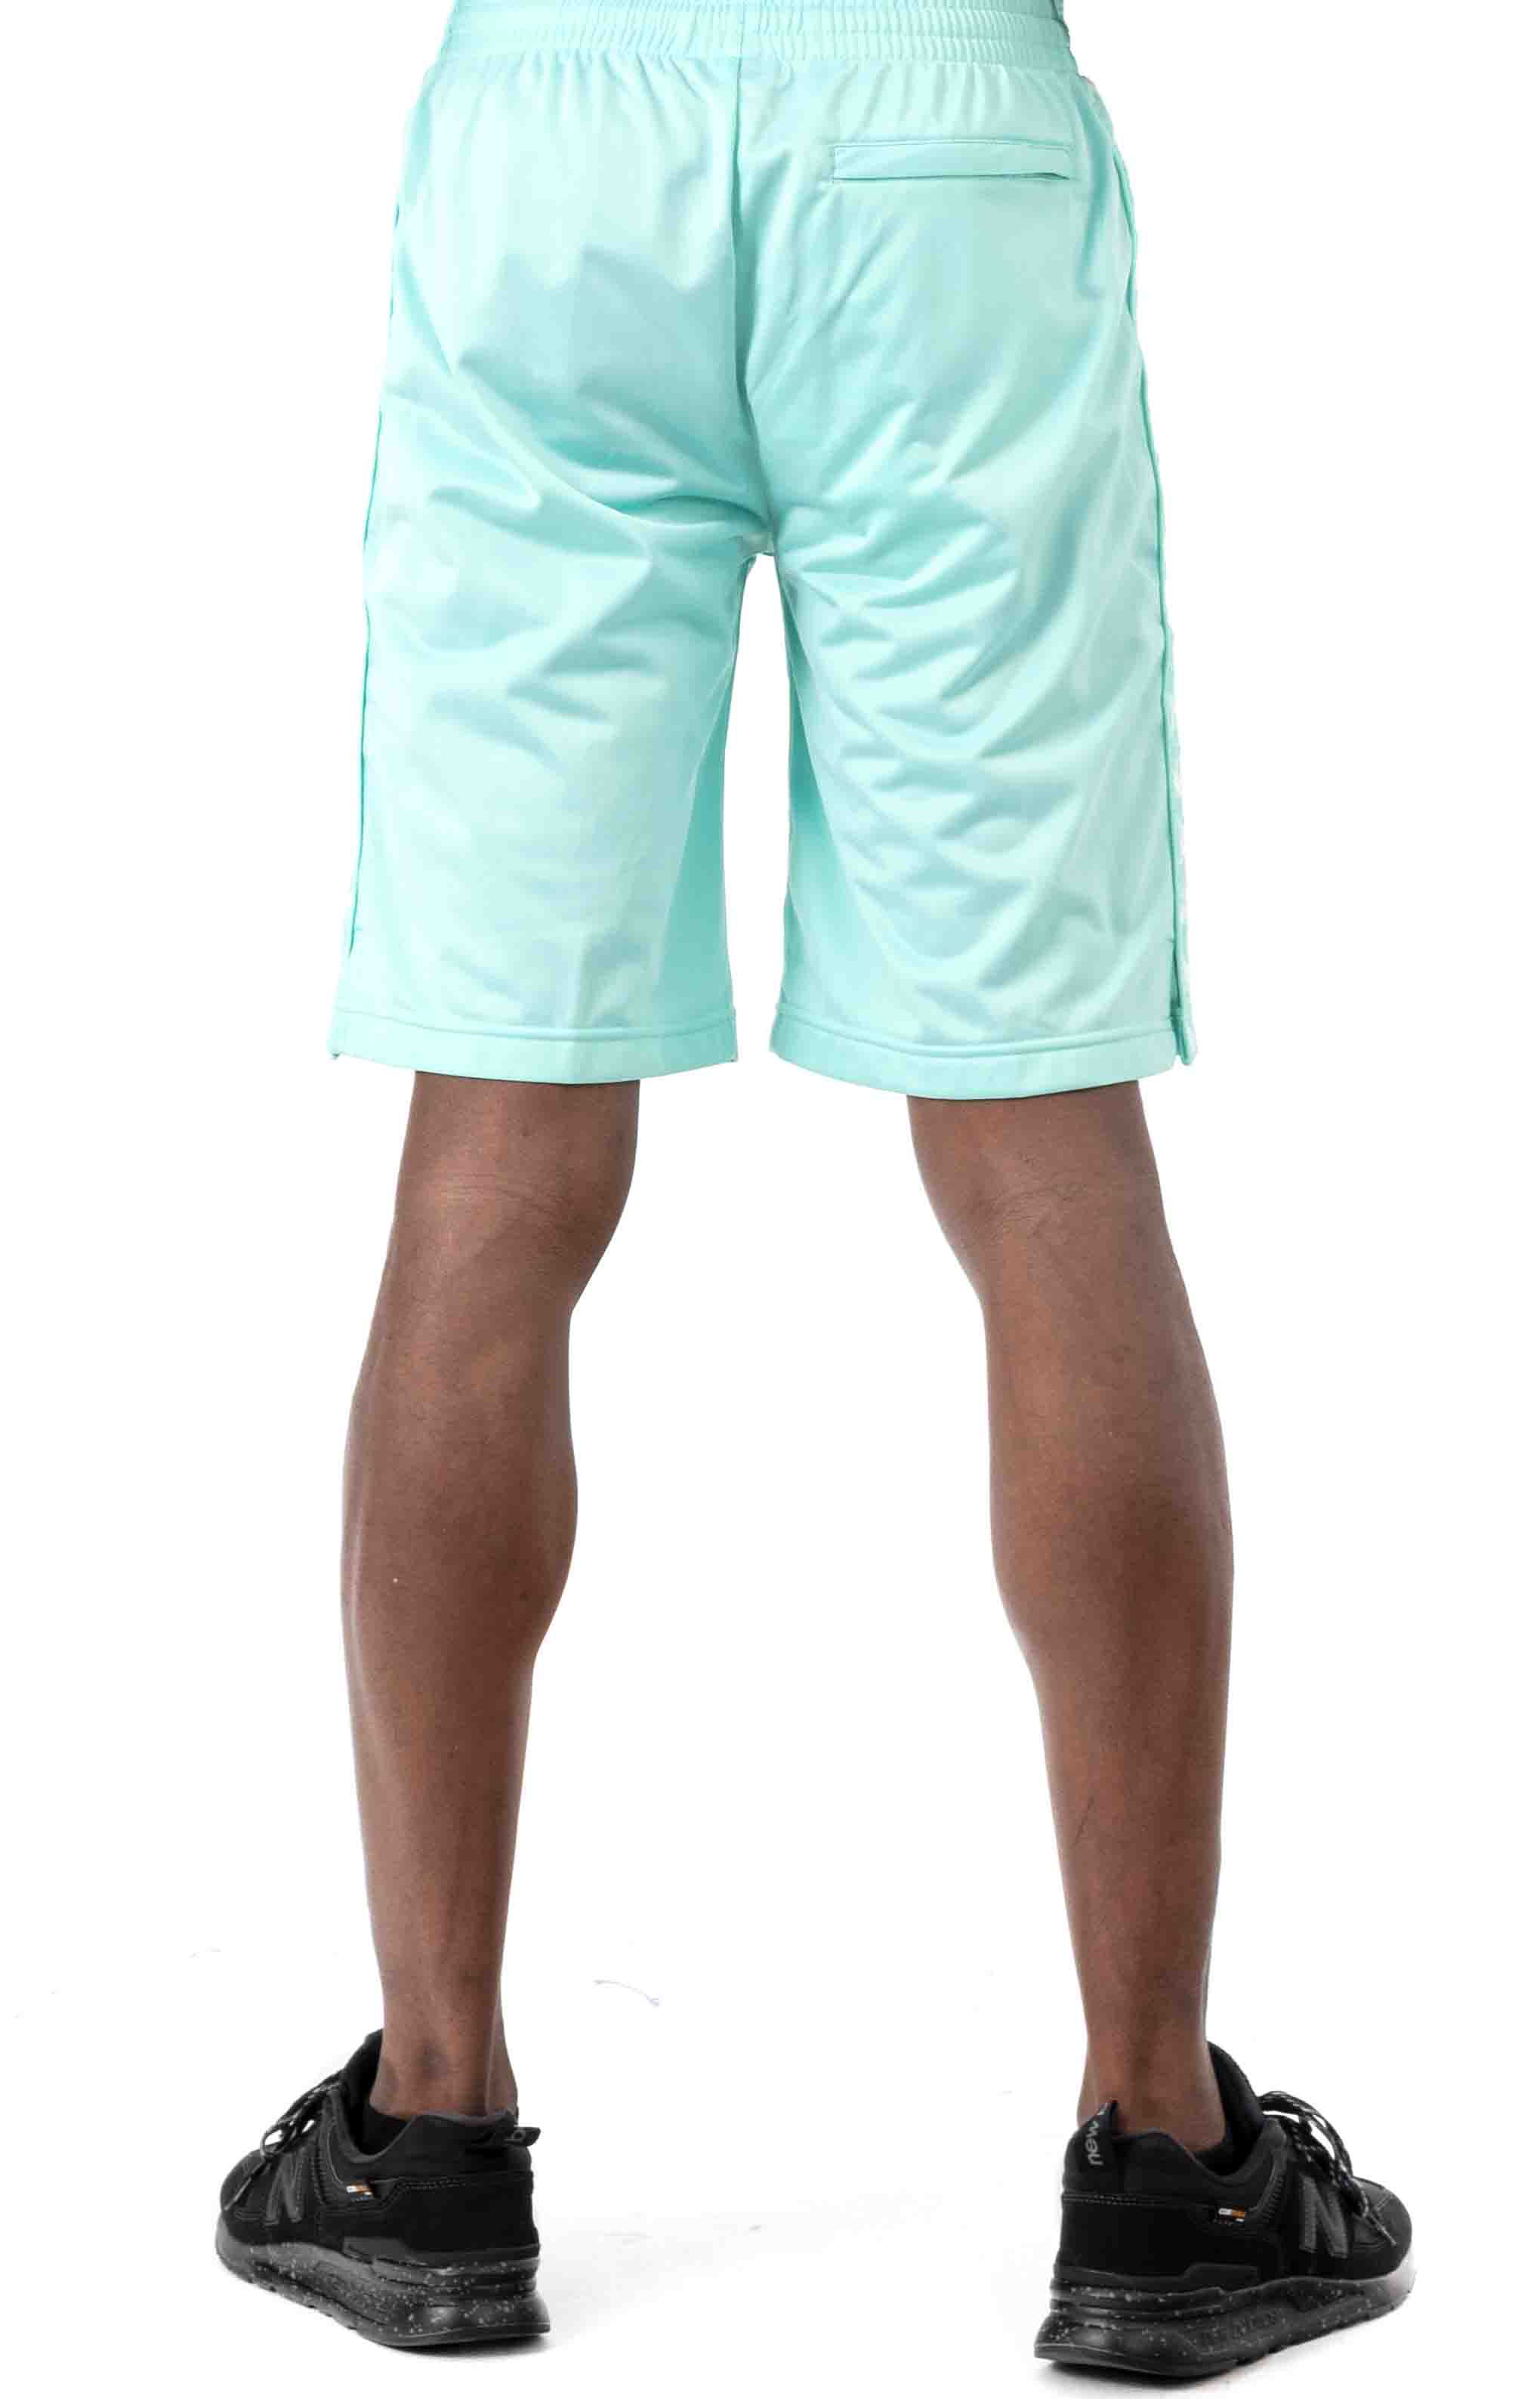 222 Banda Treadwellz Shorts - Green Aqua